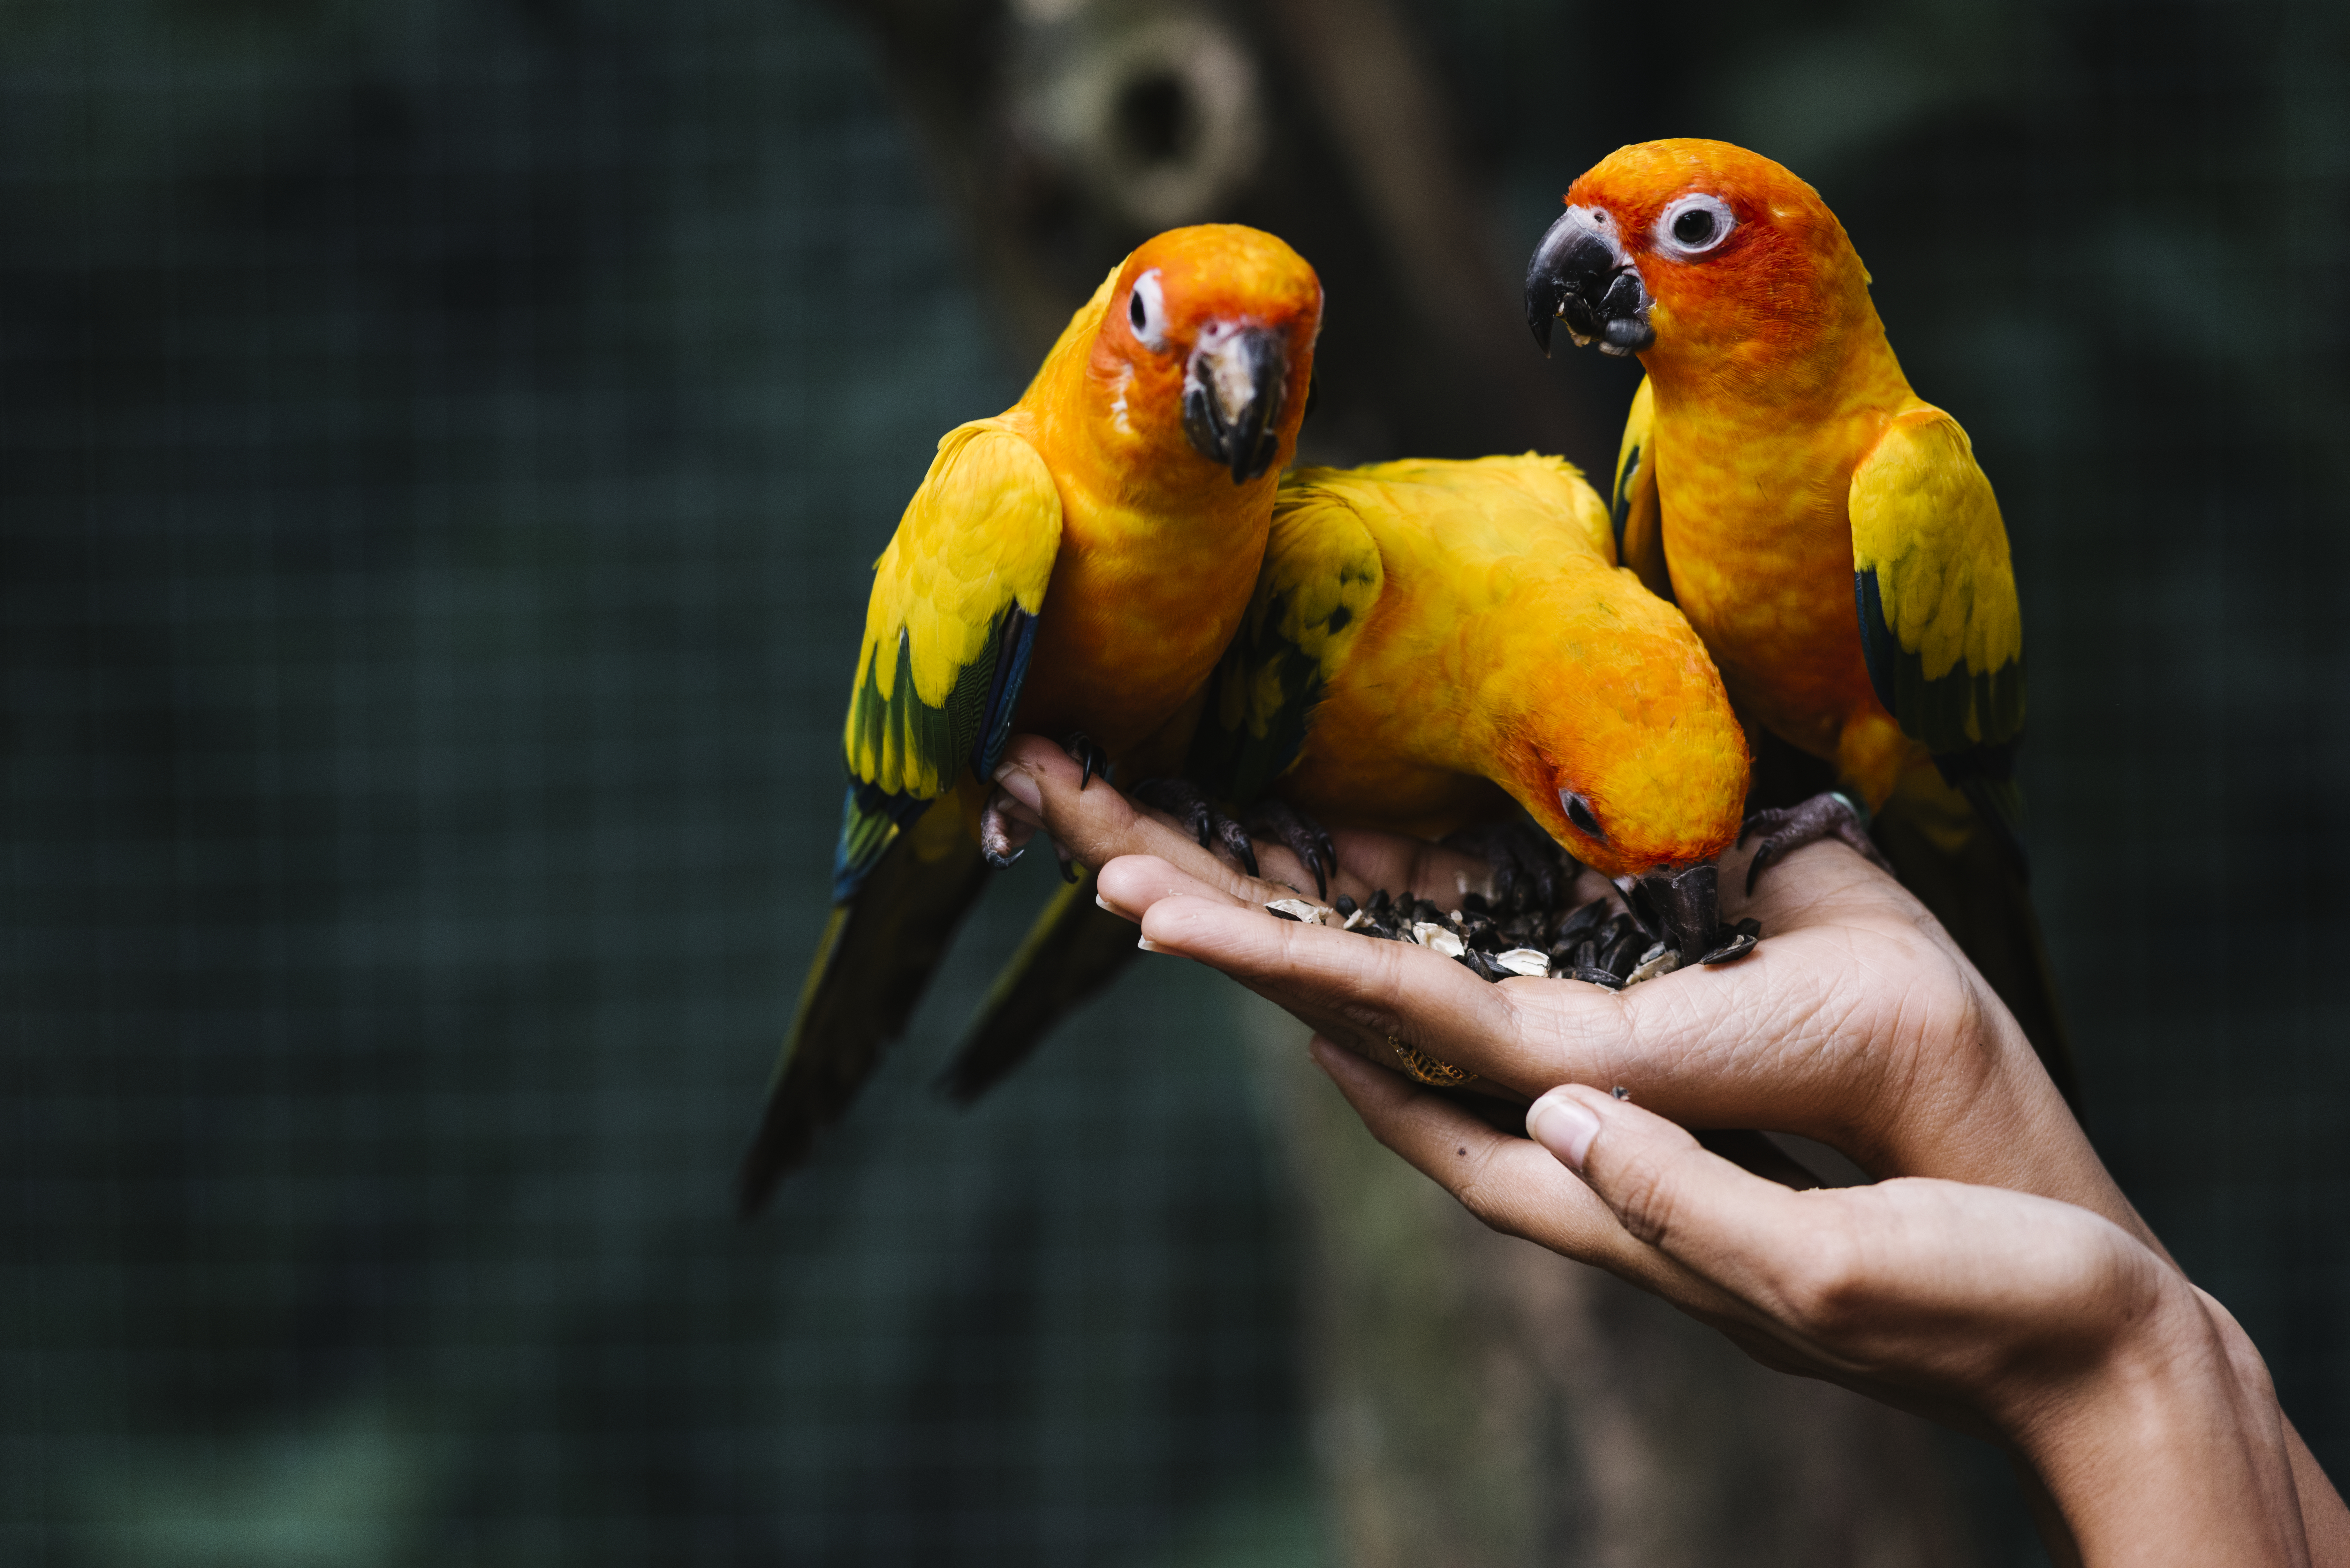 Aves exóticas como mascotas: Descubre la belleza y cautivadora compañía de estas aves únicas”